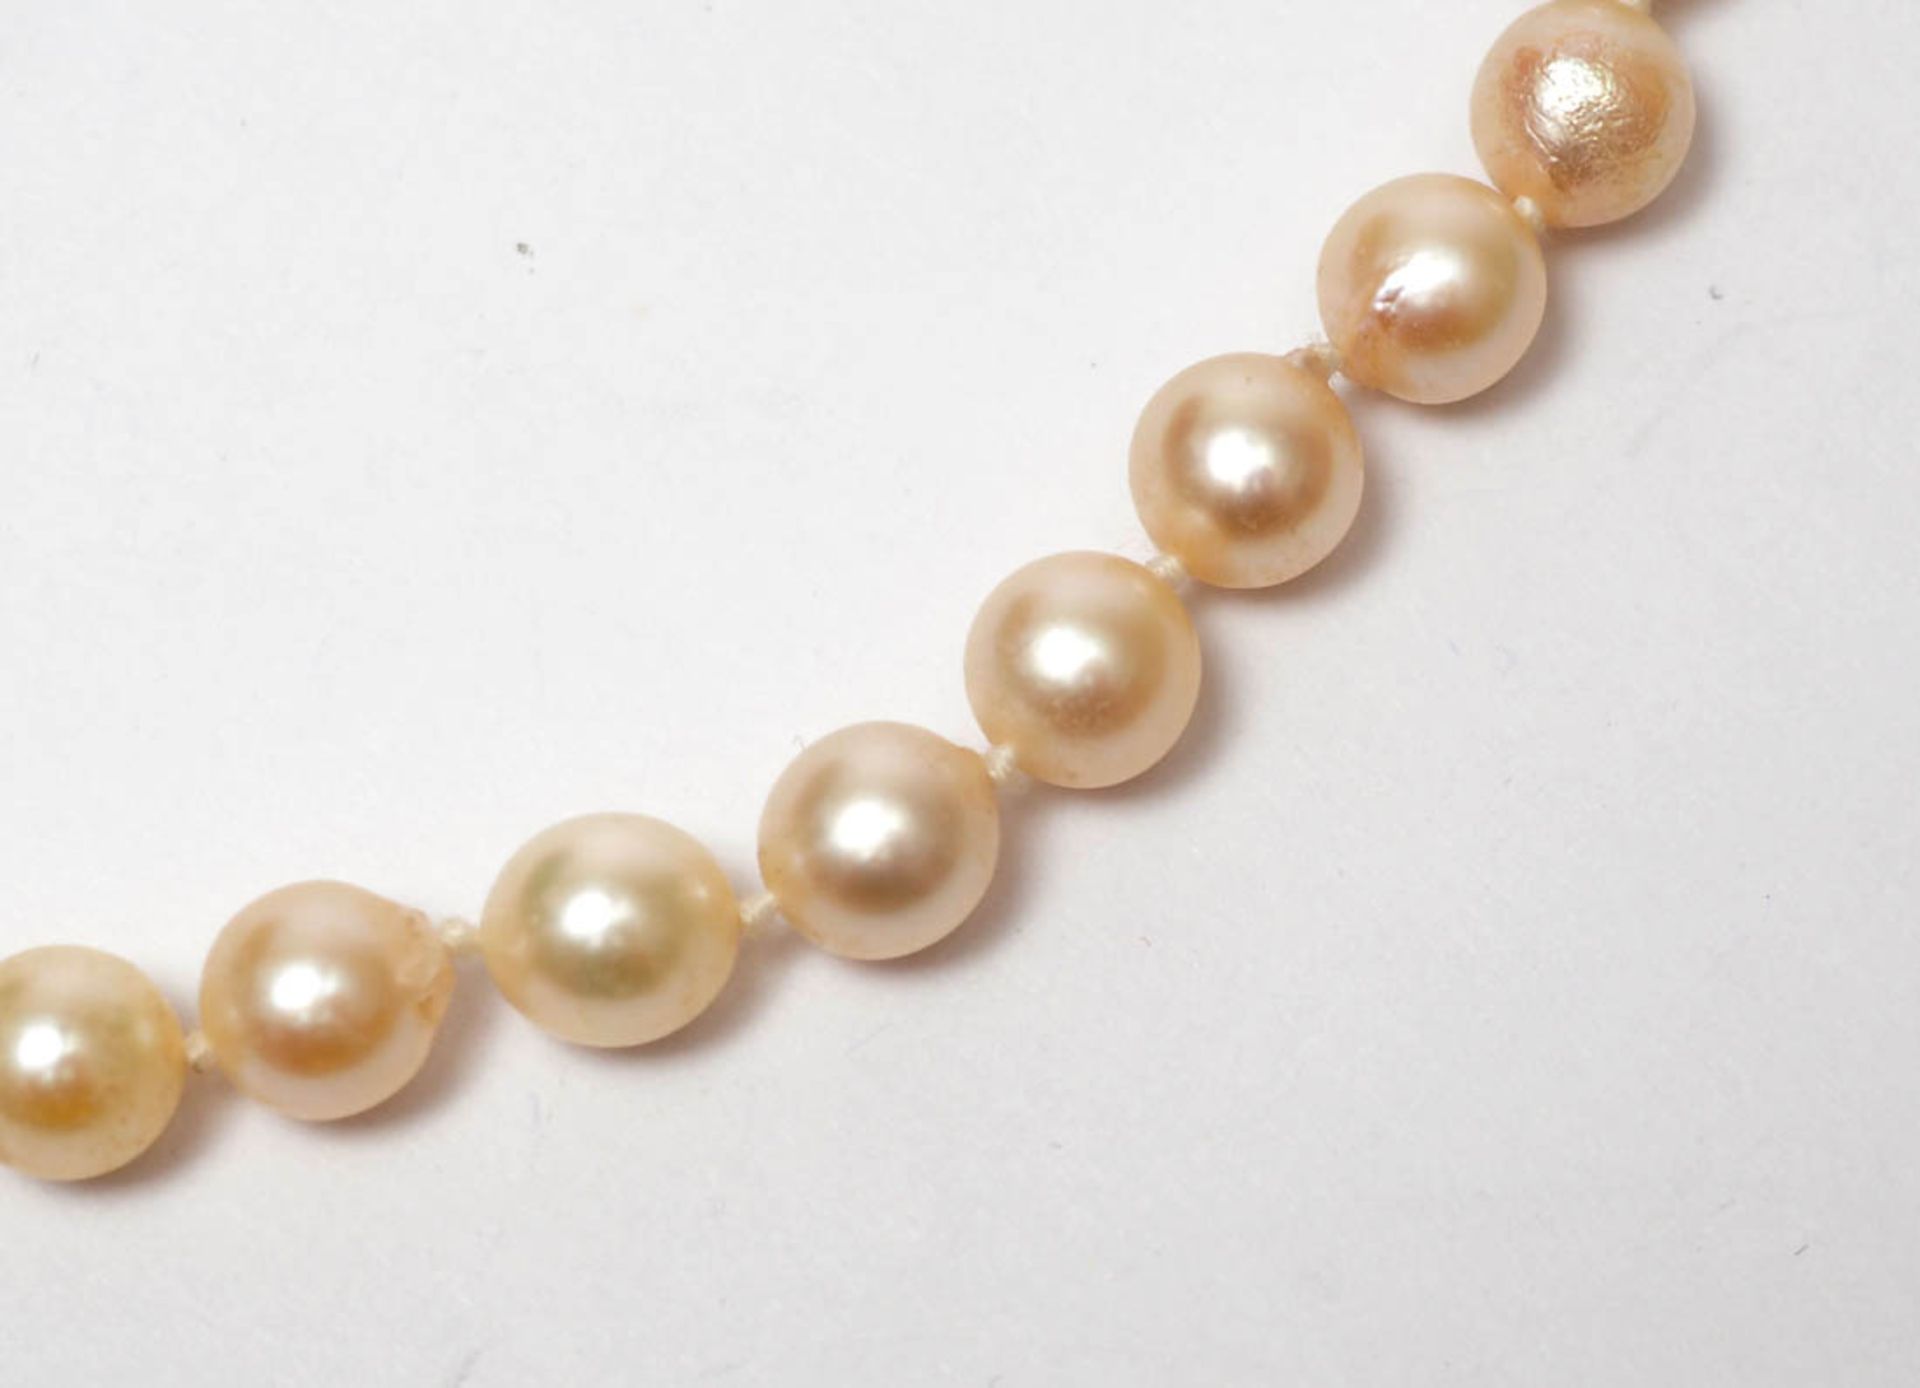 Perlenkette Gleichmäßige Perlen von je ca. 5-6mm Durchm. Karabinerschloss aus GG 14kt. L. ca. 42cm. - Bild 2 aus 2